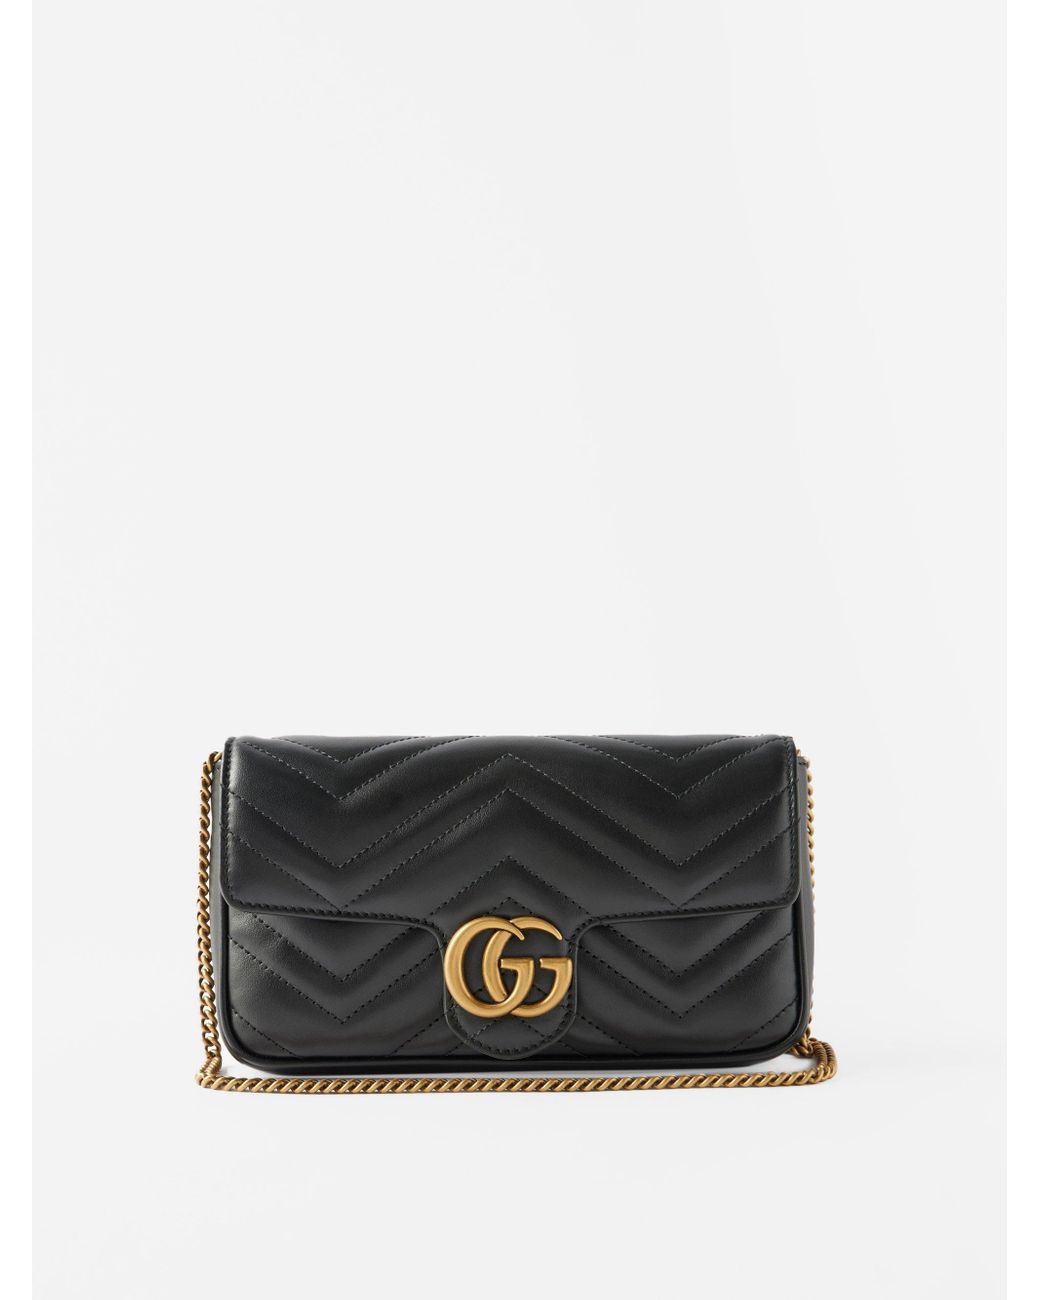 Gucci GG Marmont Super Mini Bag in Black | Lyst